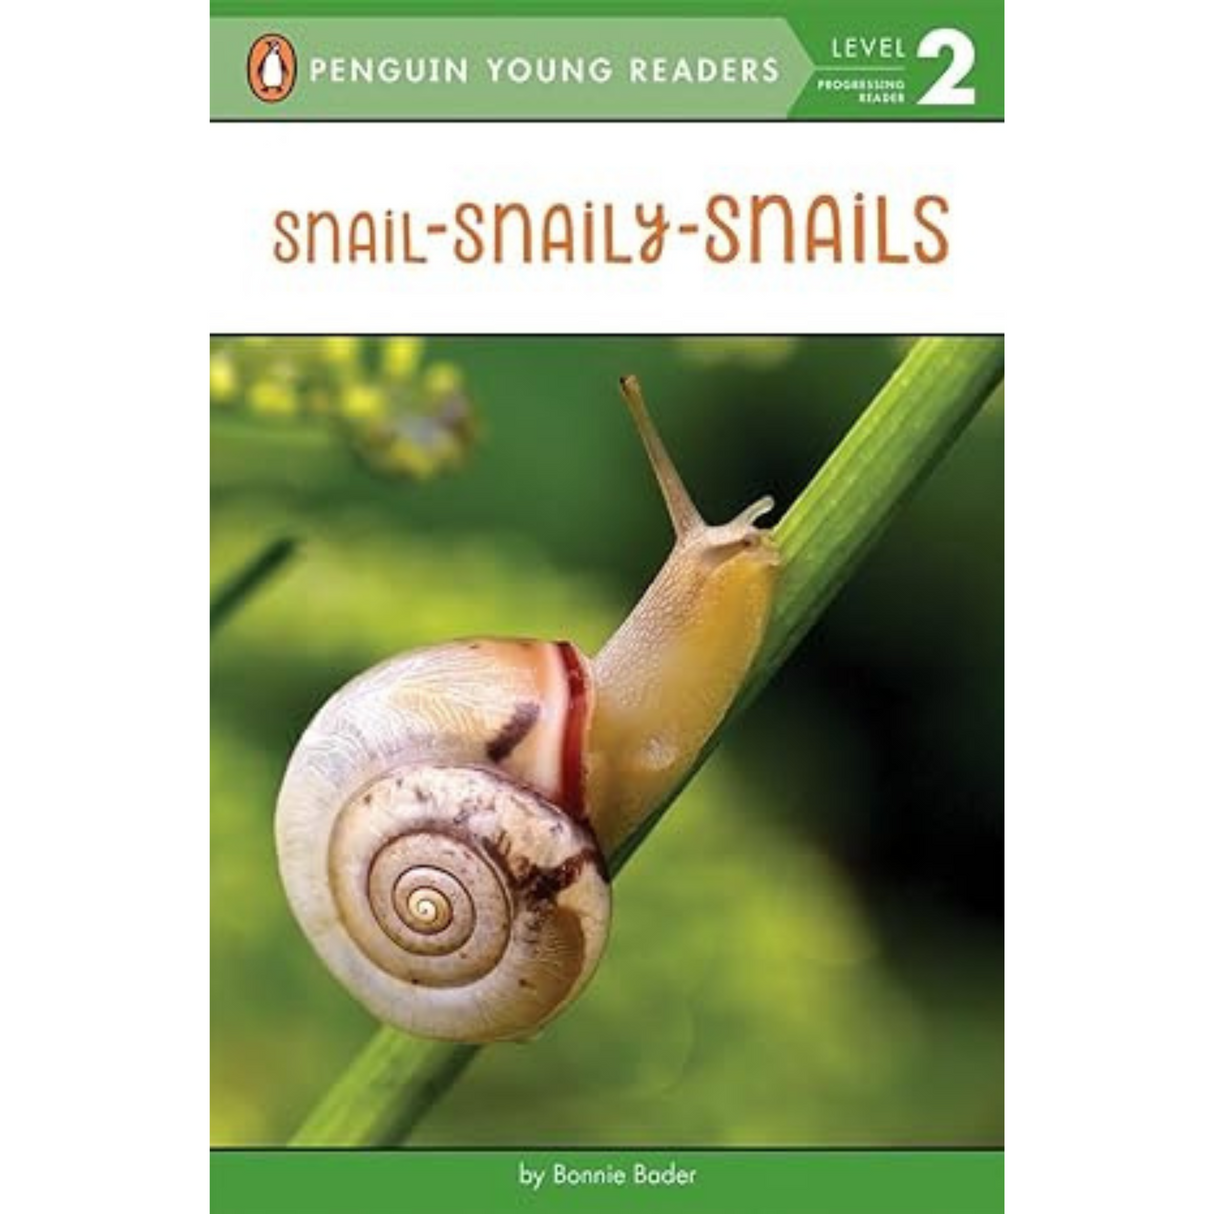 Snail-Snaily-Snails Paperback – March 21, 2017